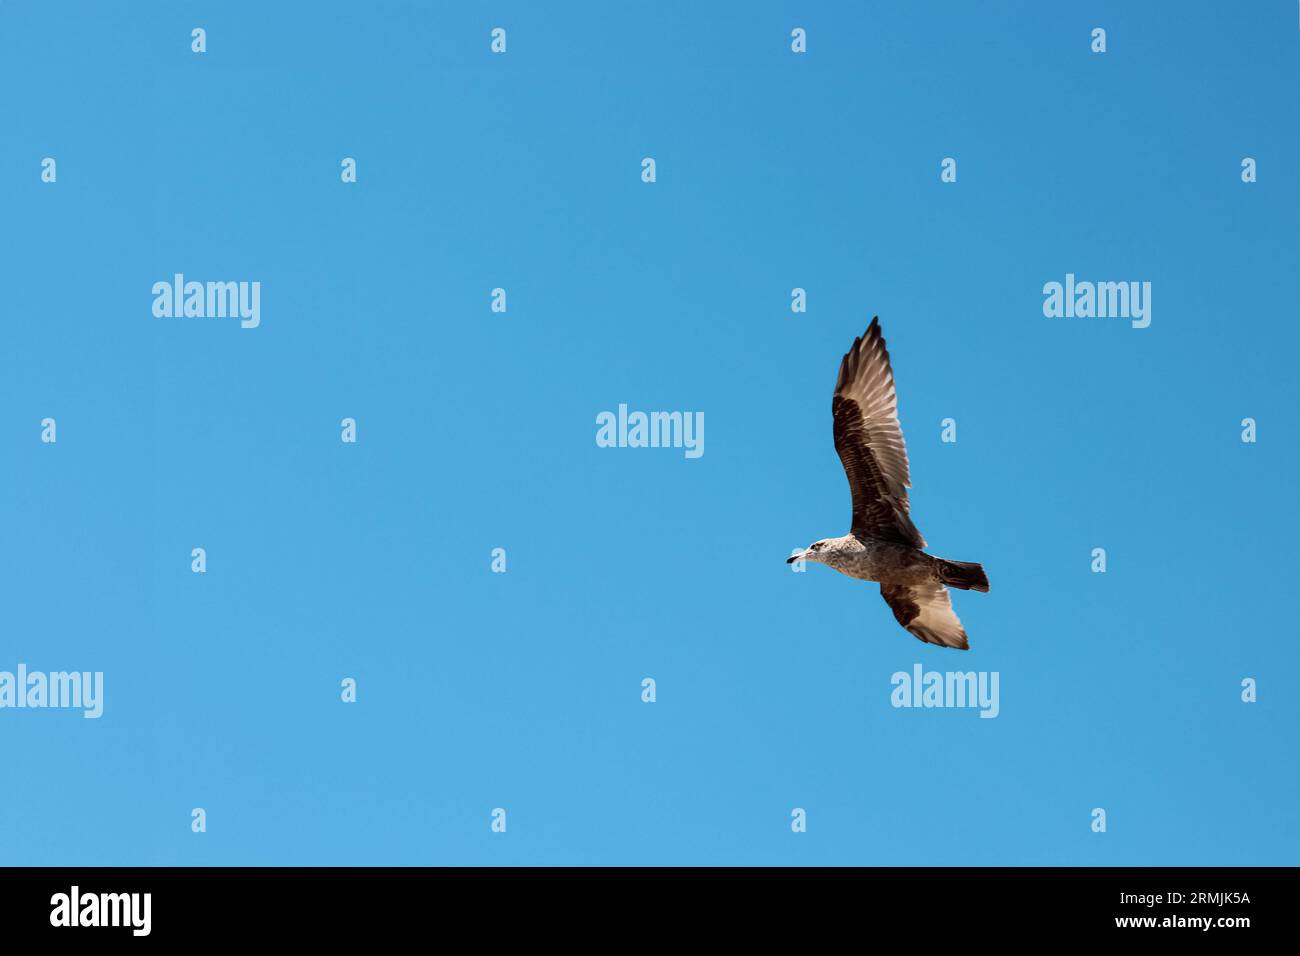 Un gabbiano sta volando nel cielo azzurro. Il gabbiano è un grande uccello con piume bianche e punte nere sulle ali. Foto Stock